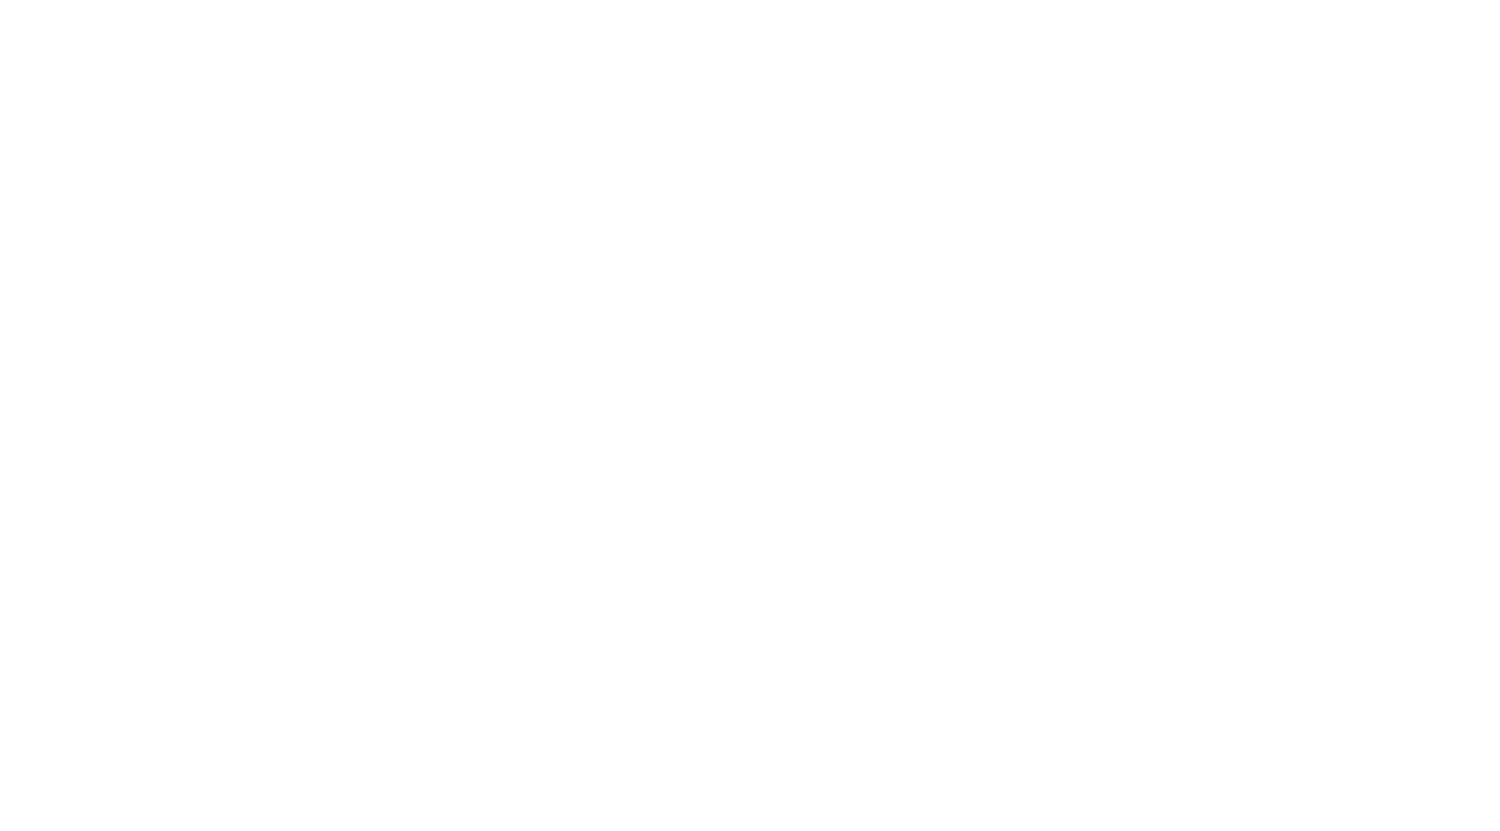 Songbird Parlour